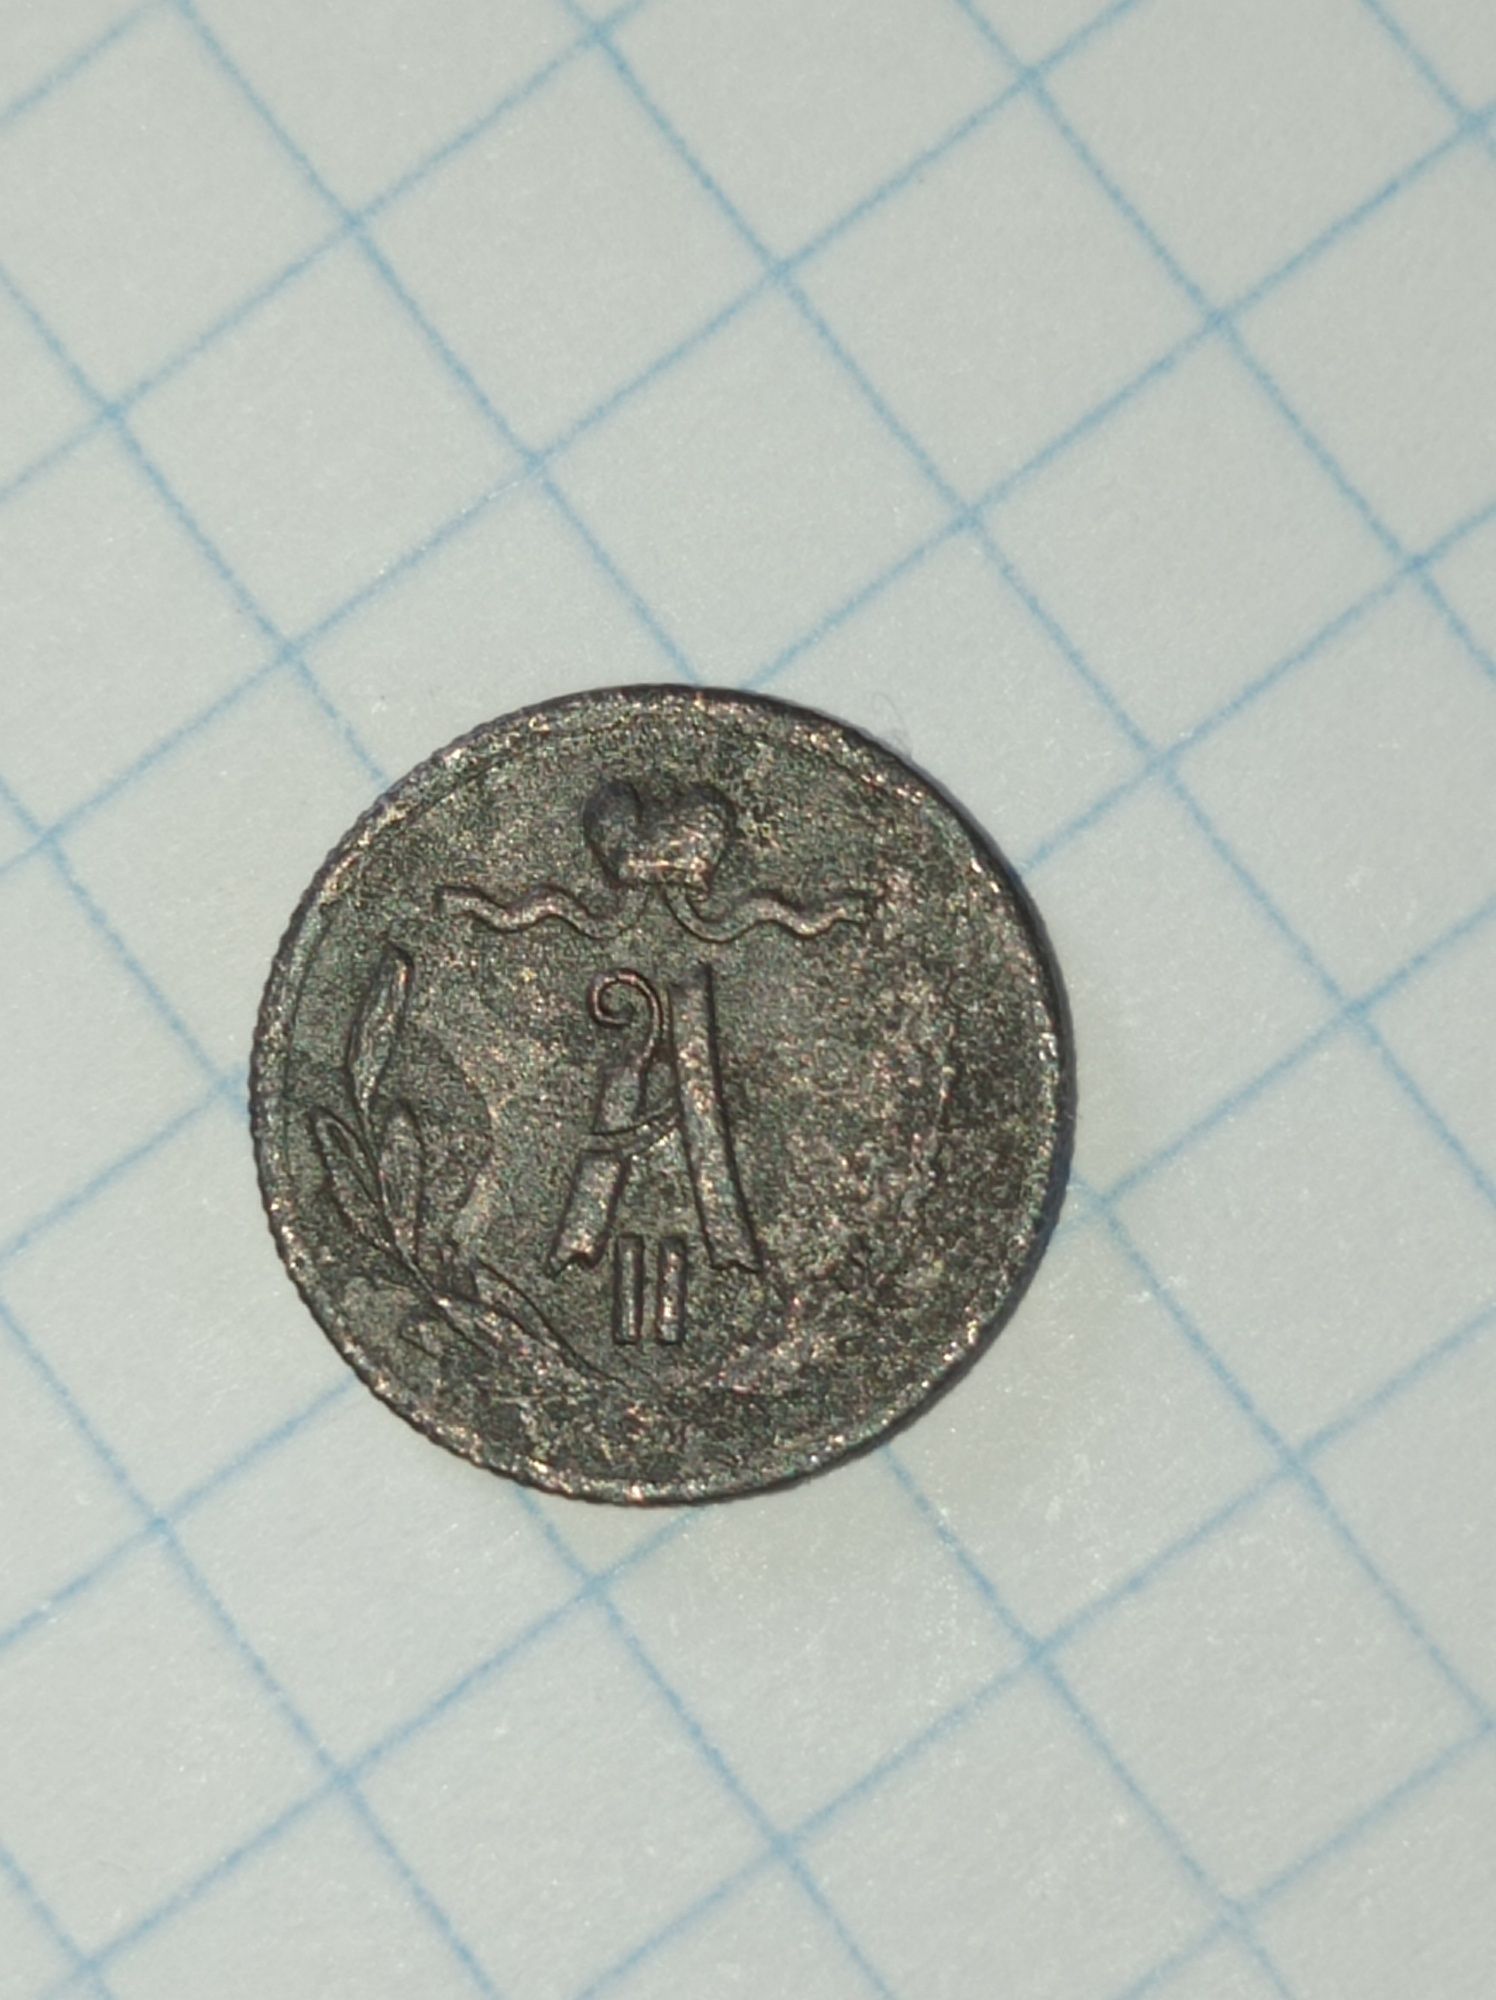 Продам монету олександра другого 1870 року із буквами Є. М